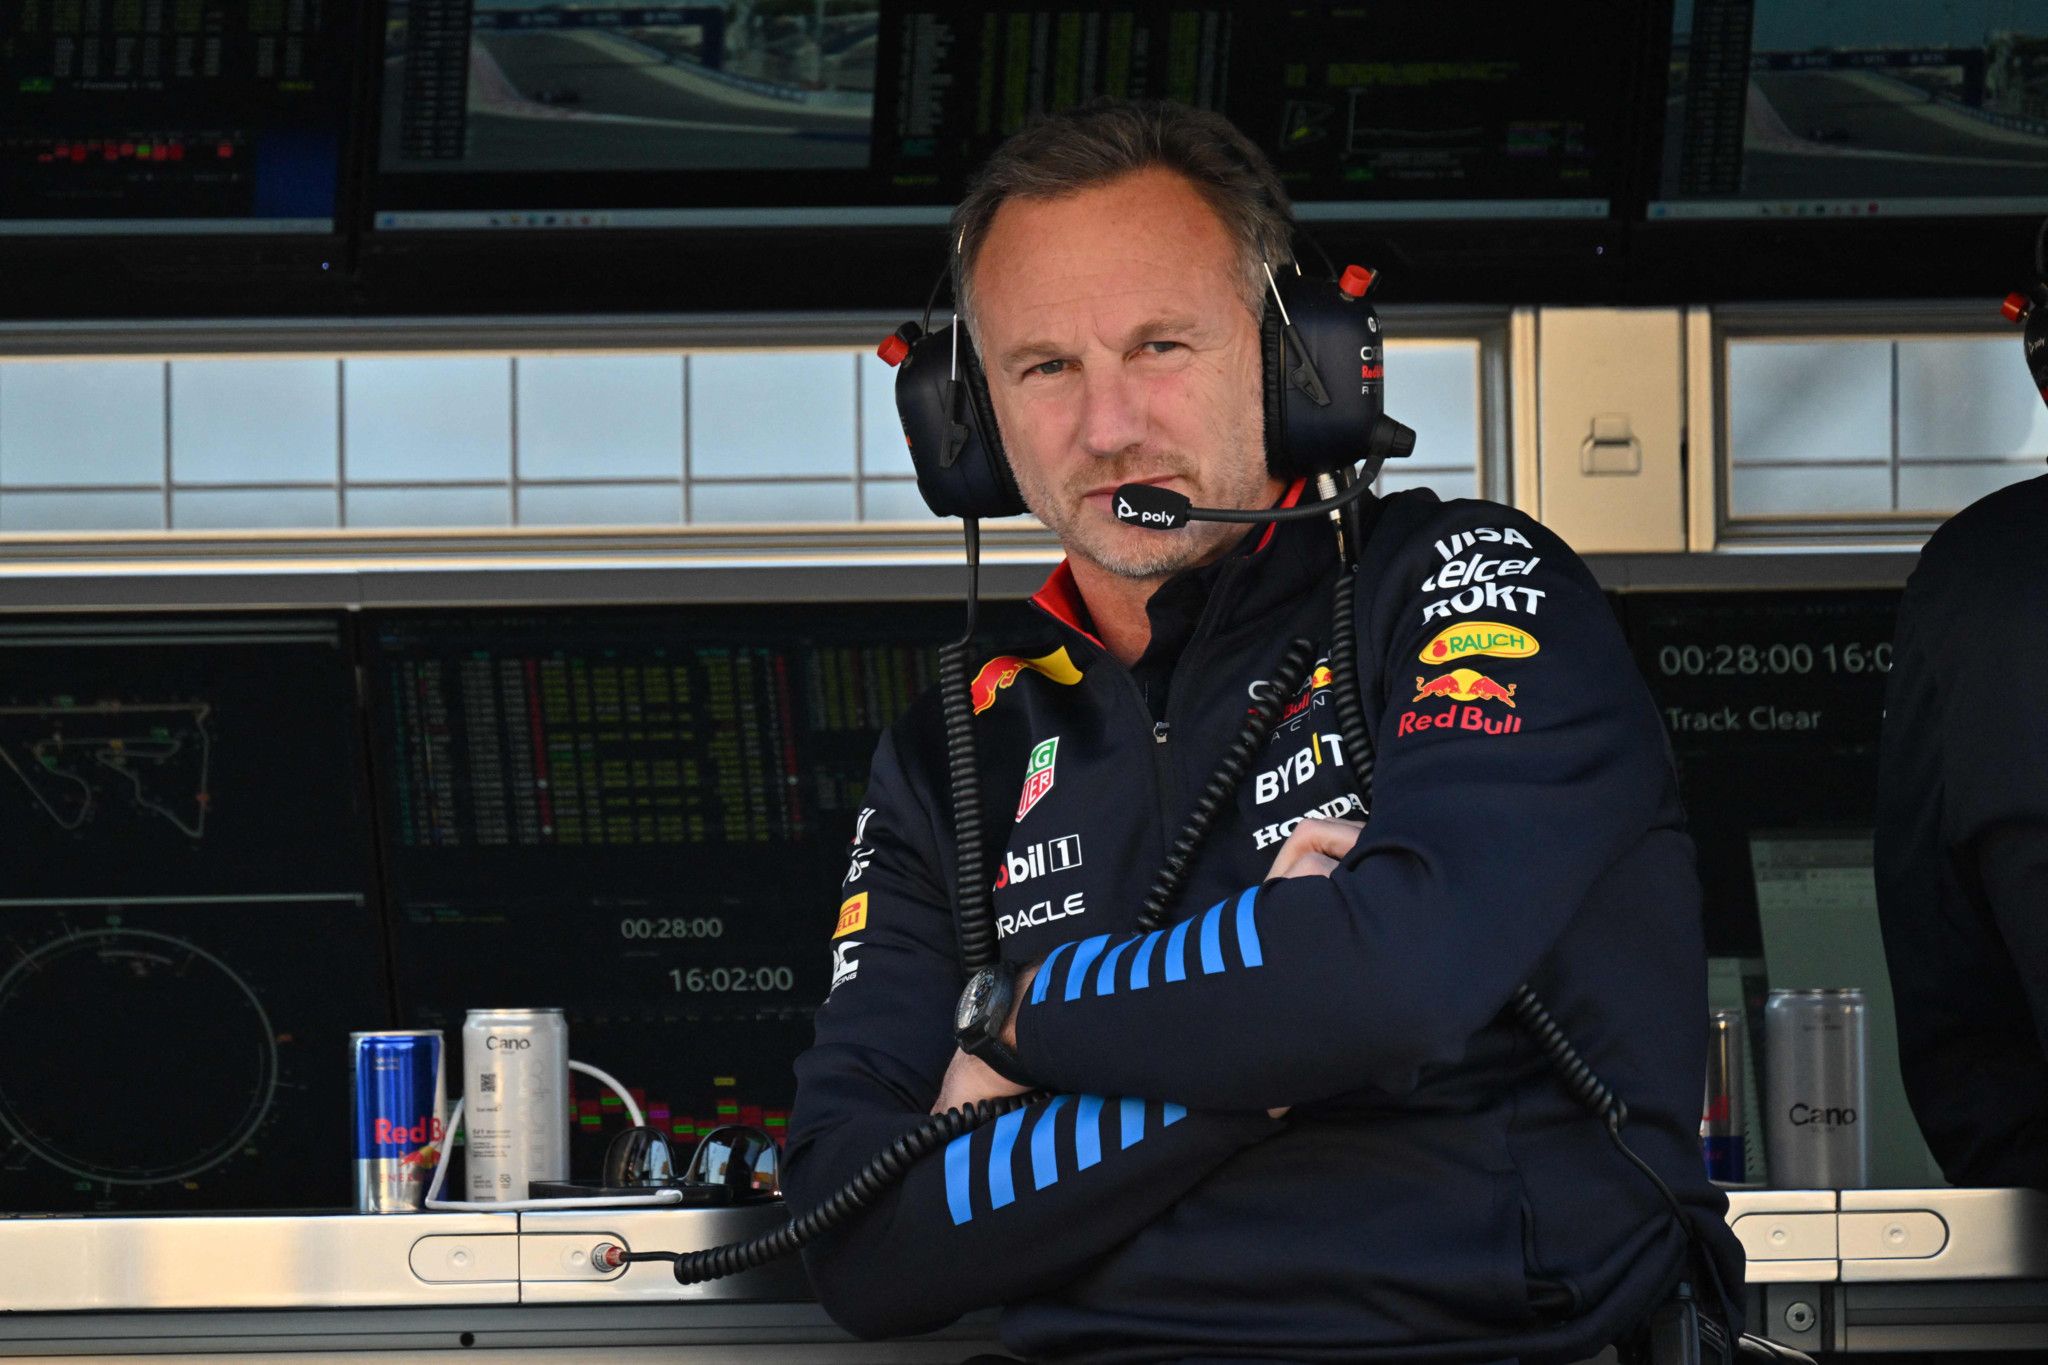 L'employée de Red Bull qui a accusé Christian Horner a été suspendue